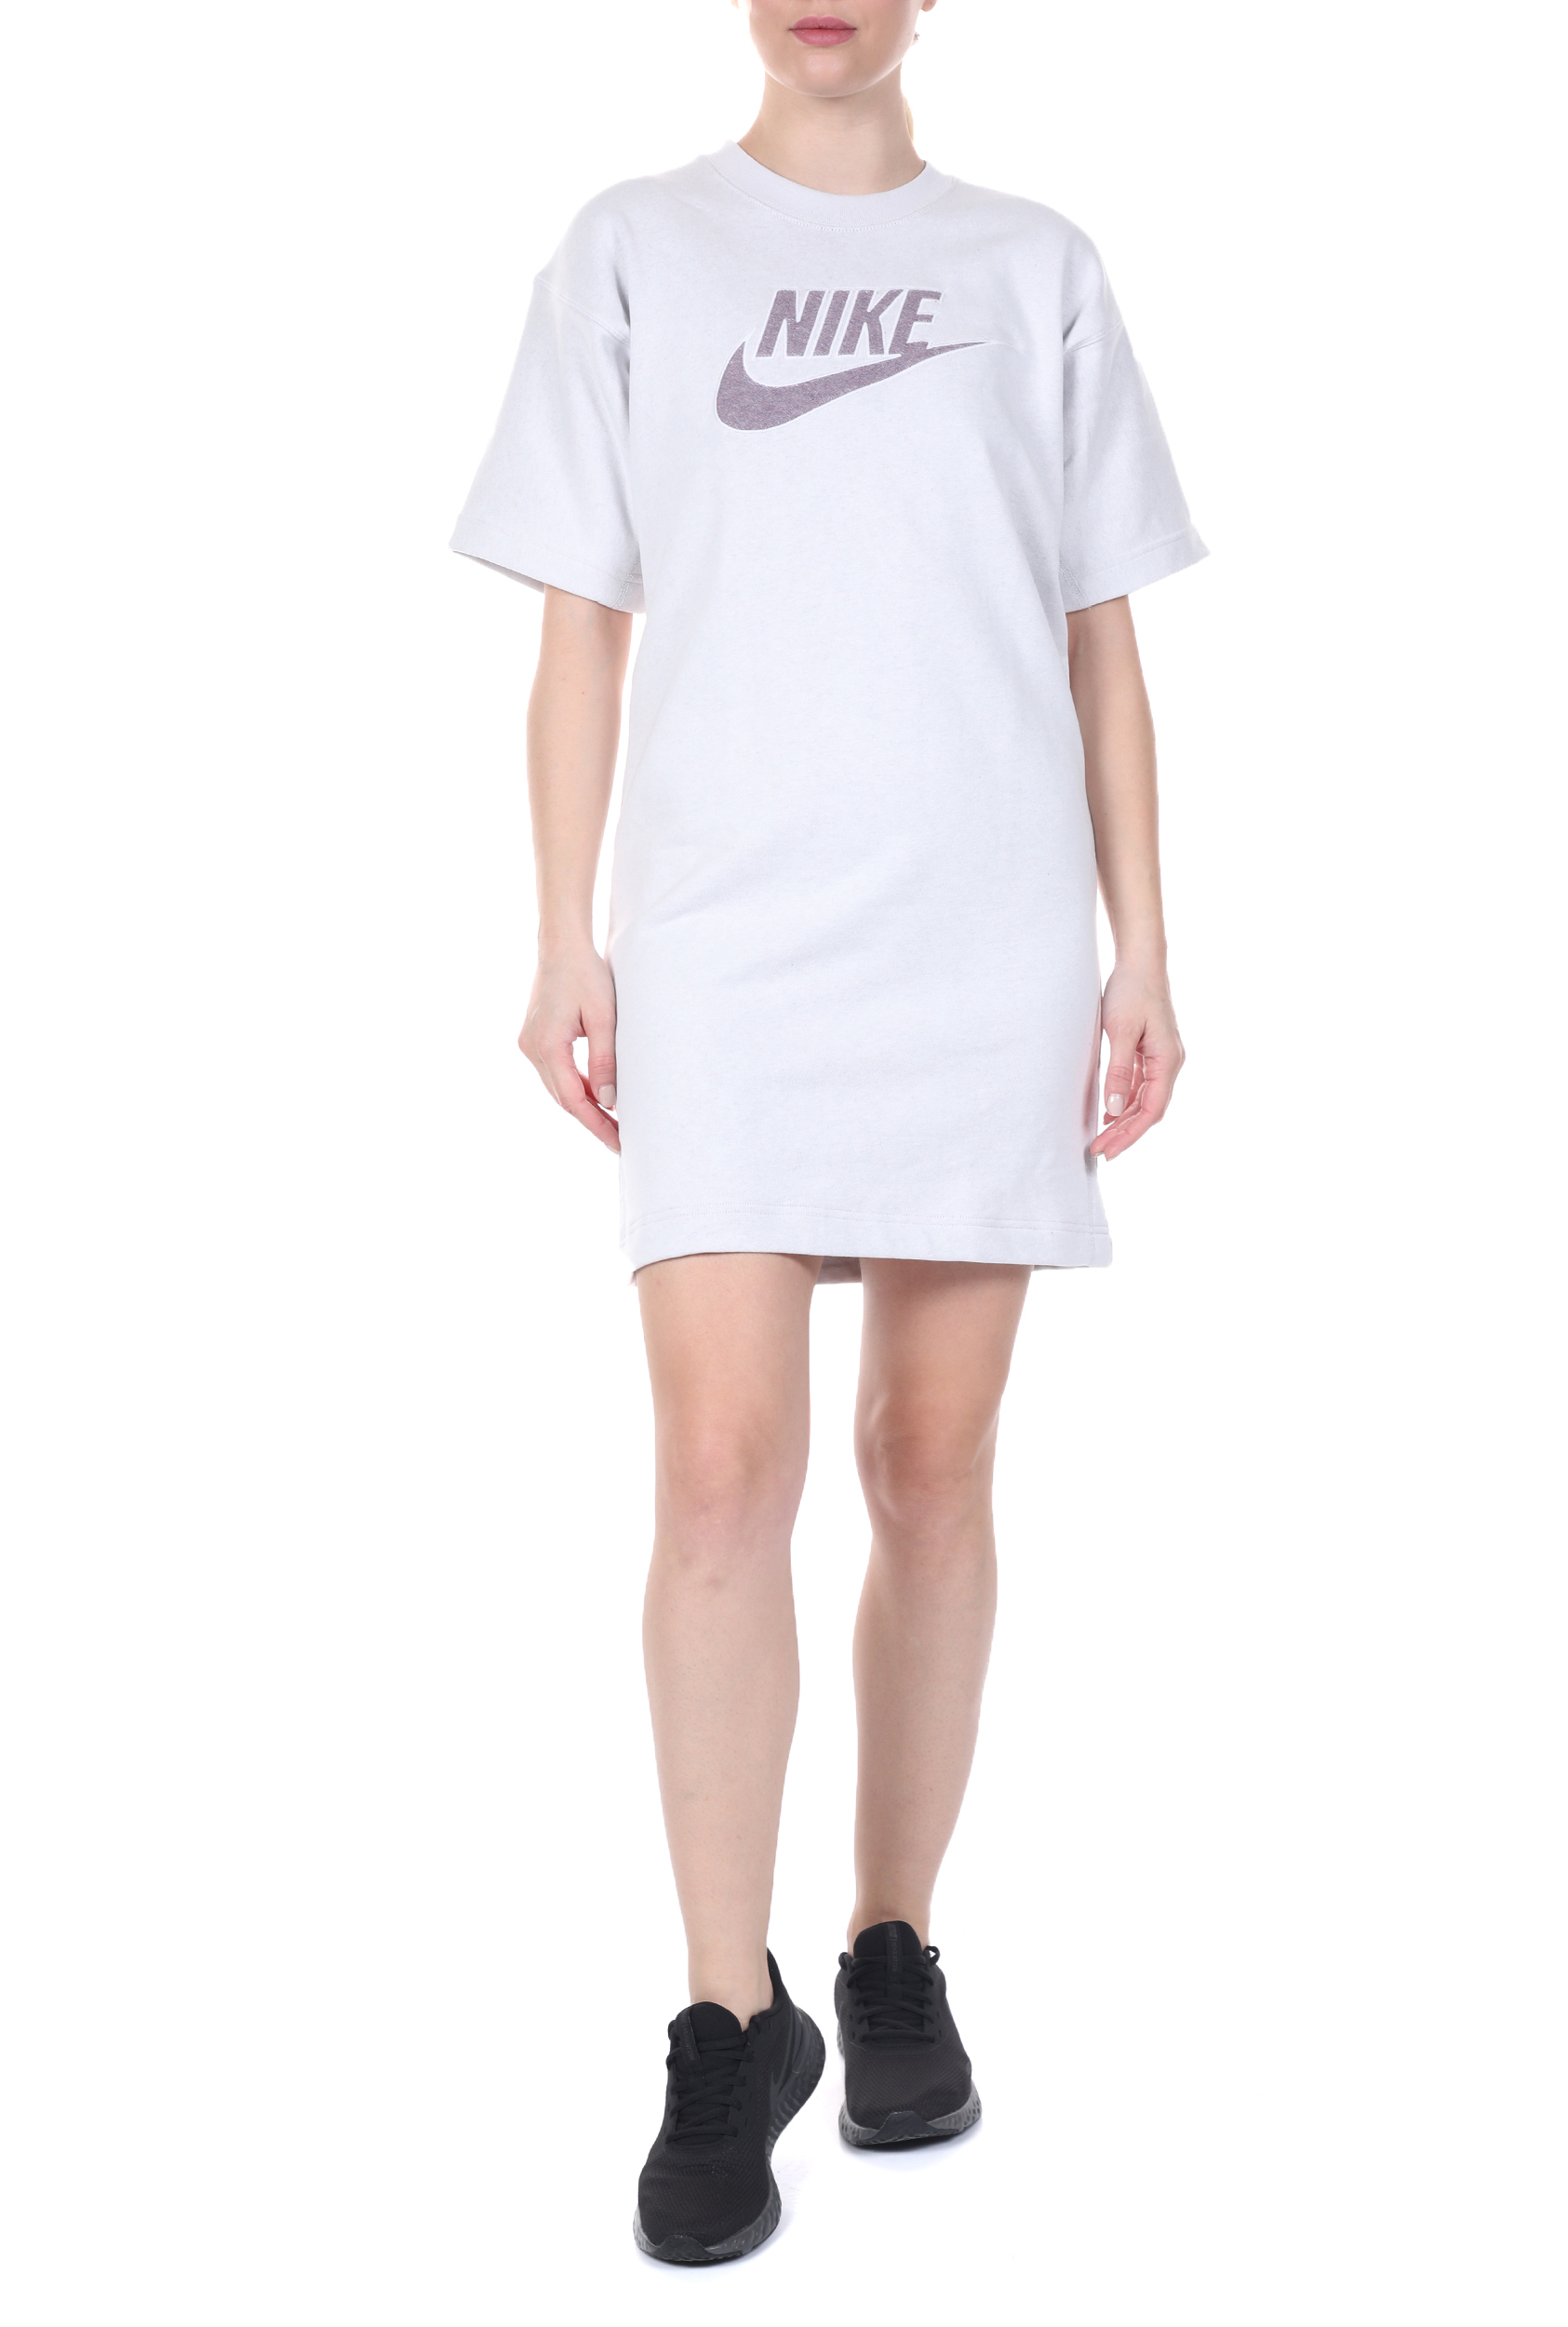 Γυναικεία/Ρούχα/Φορέματα/Μίνι NIKE - Γυναικείο mini φόρεμα NIKE NSW DRESS FT M2Z γκρι